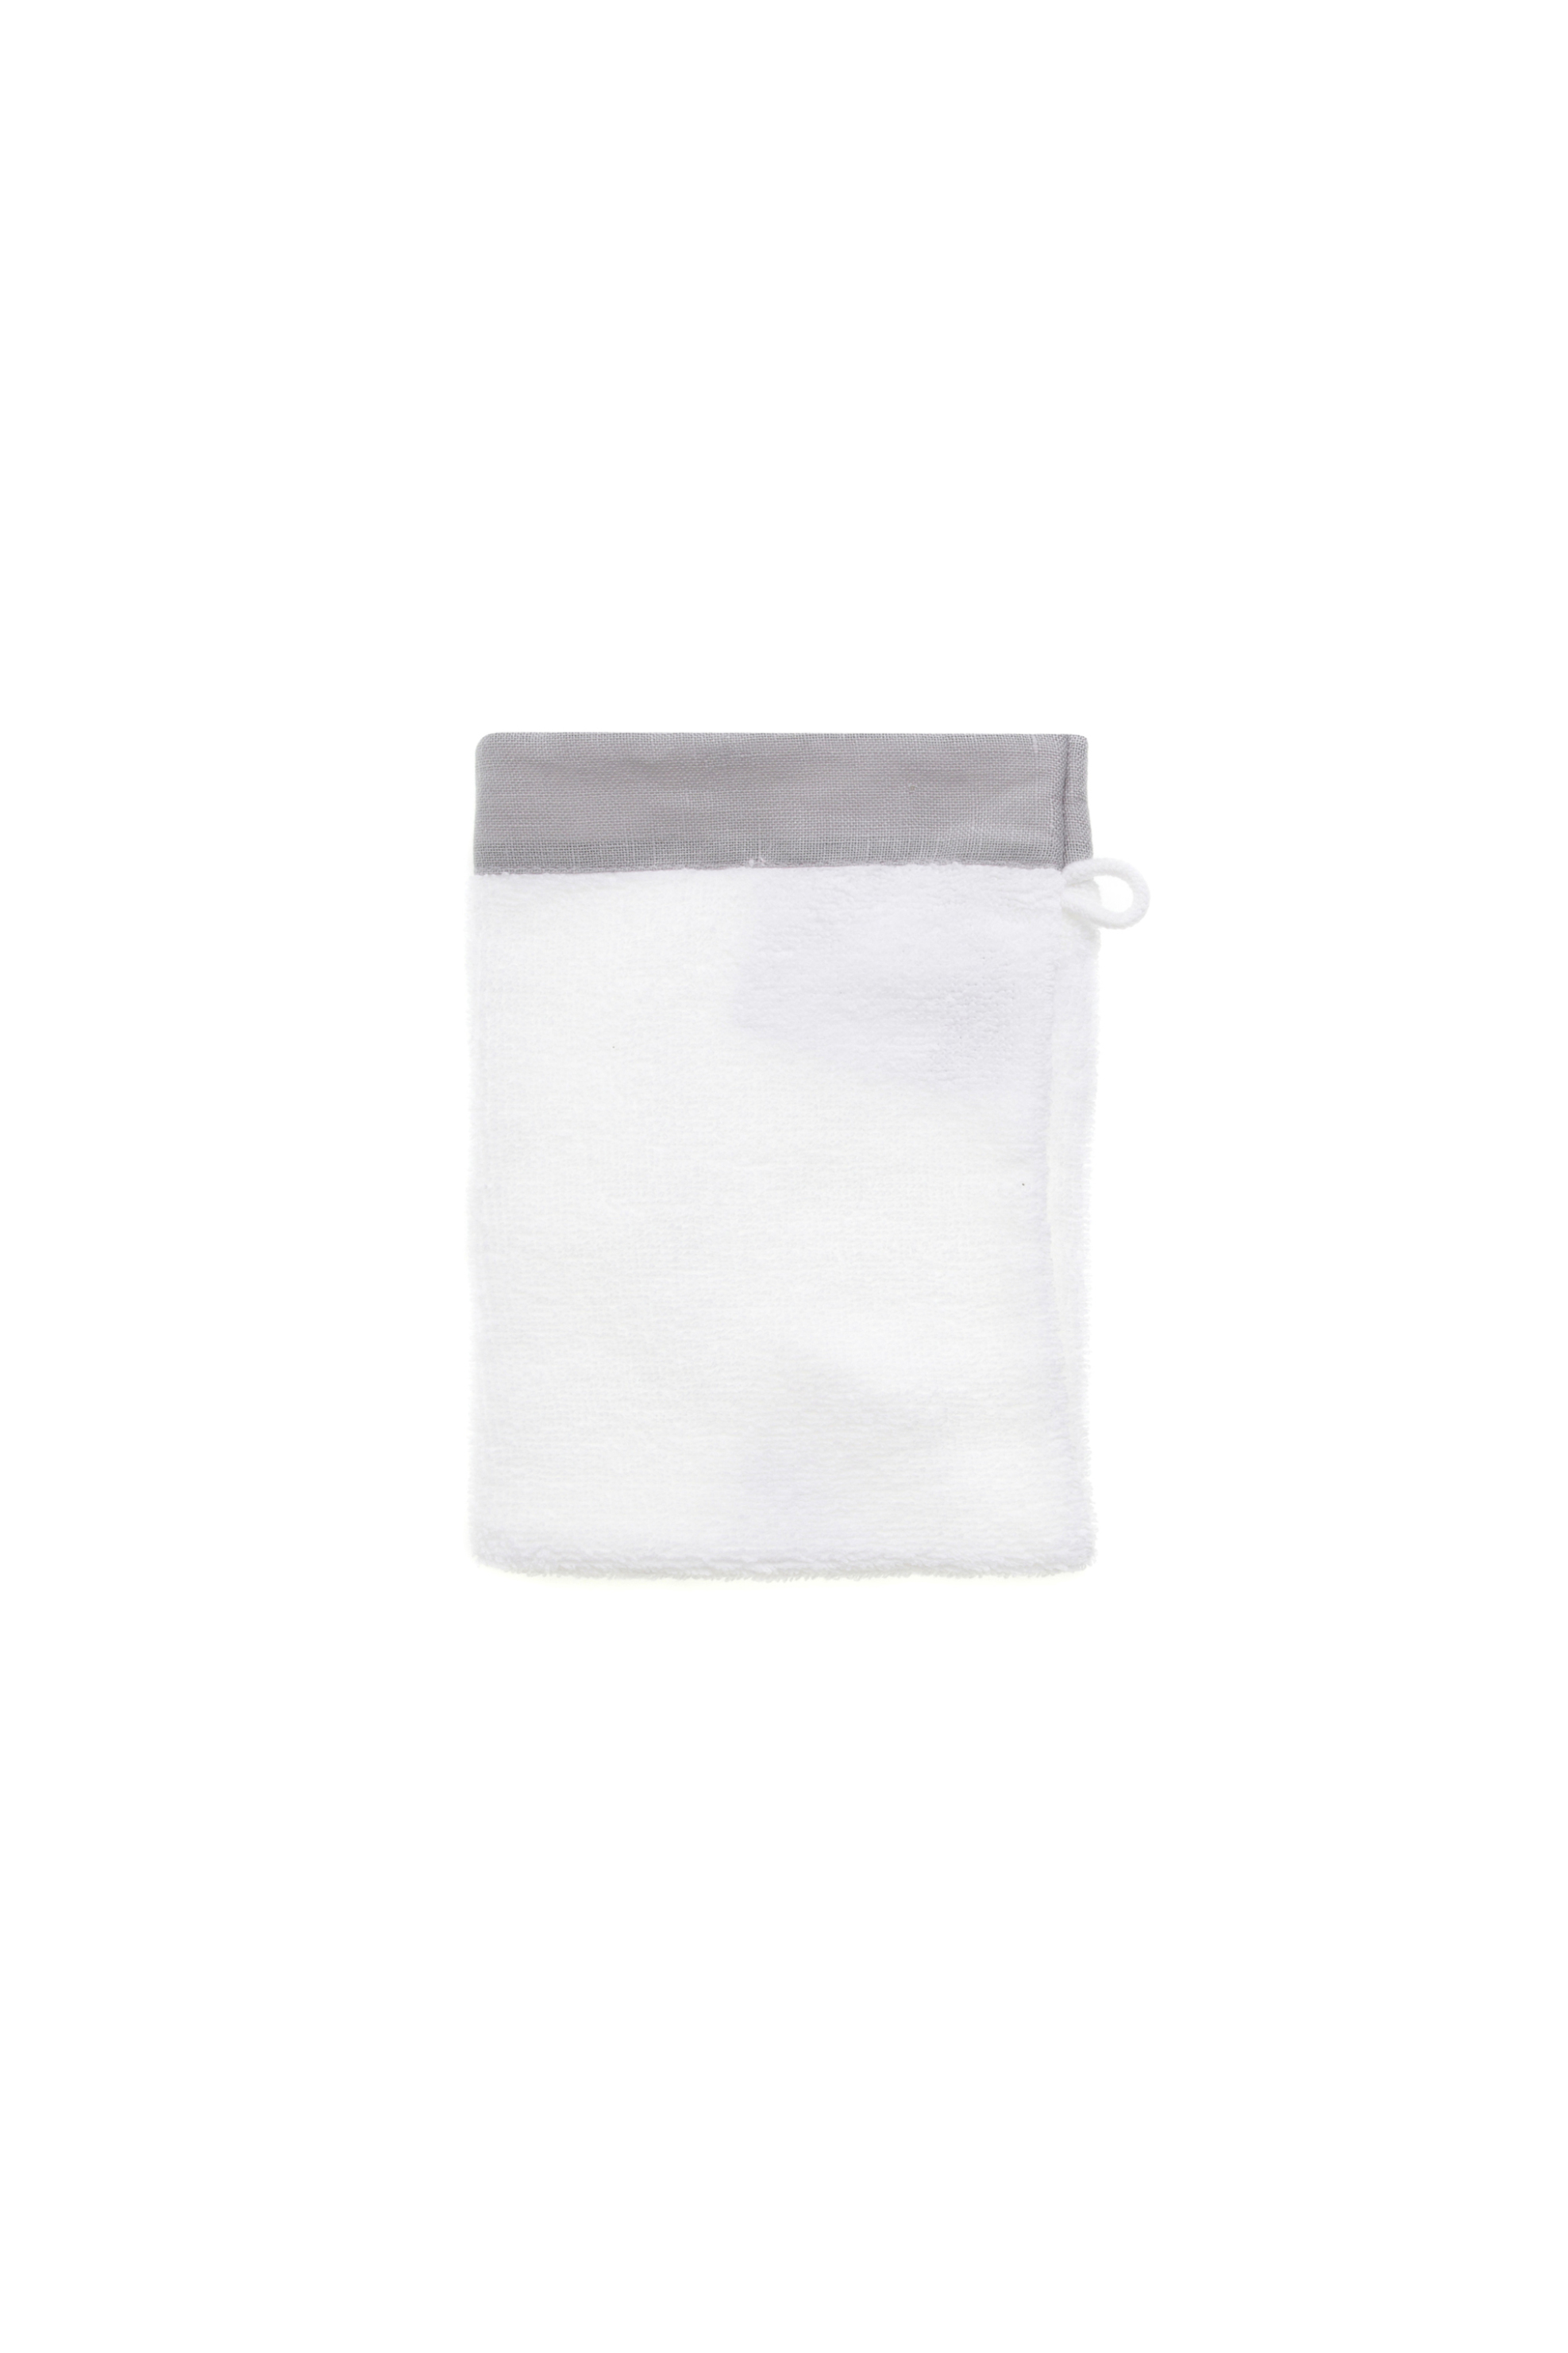 Coincasa πετσετέ γάντι μπάνιου με λινό τελείωμα 15 x 21 cm - 006678400 Γκρι